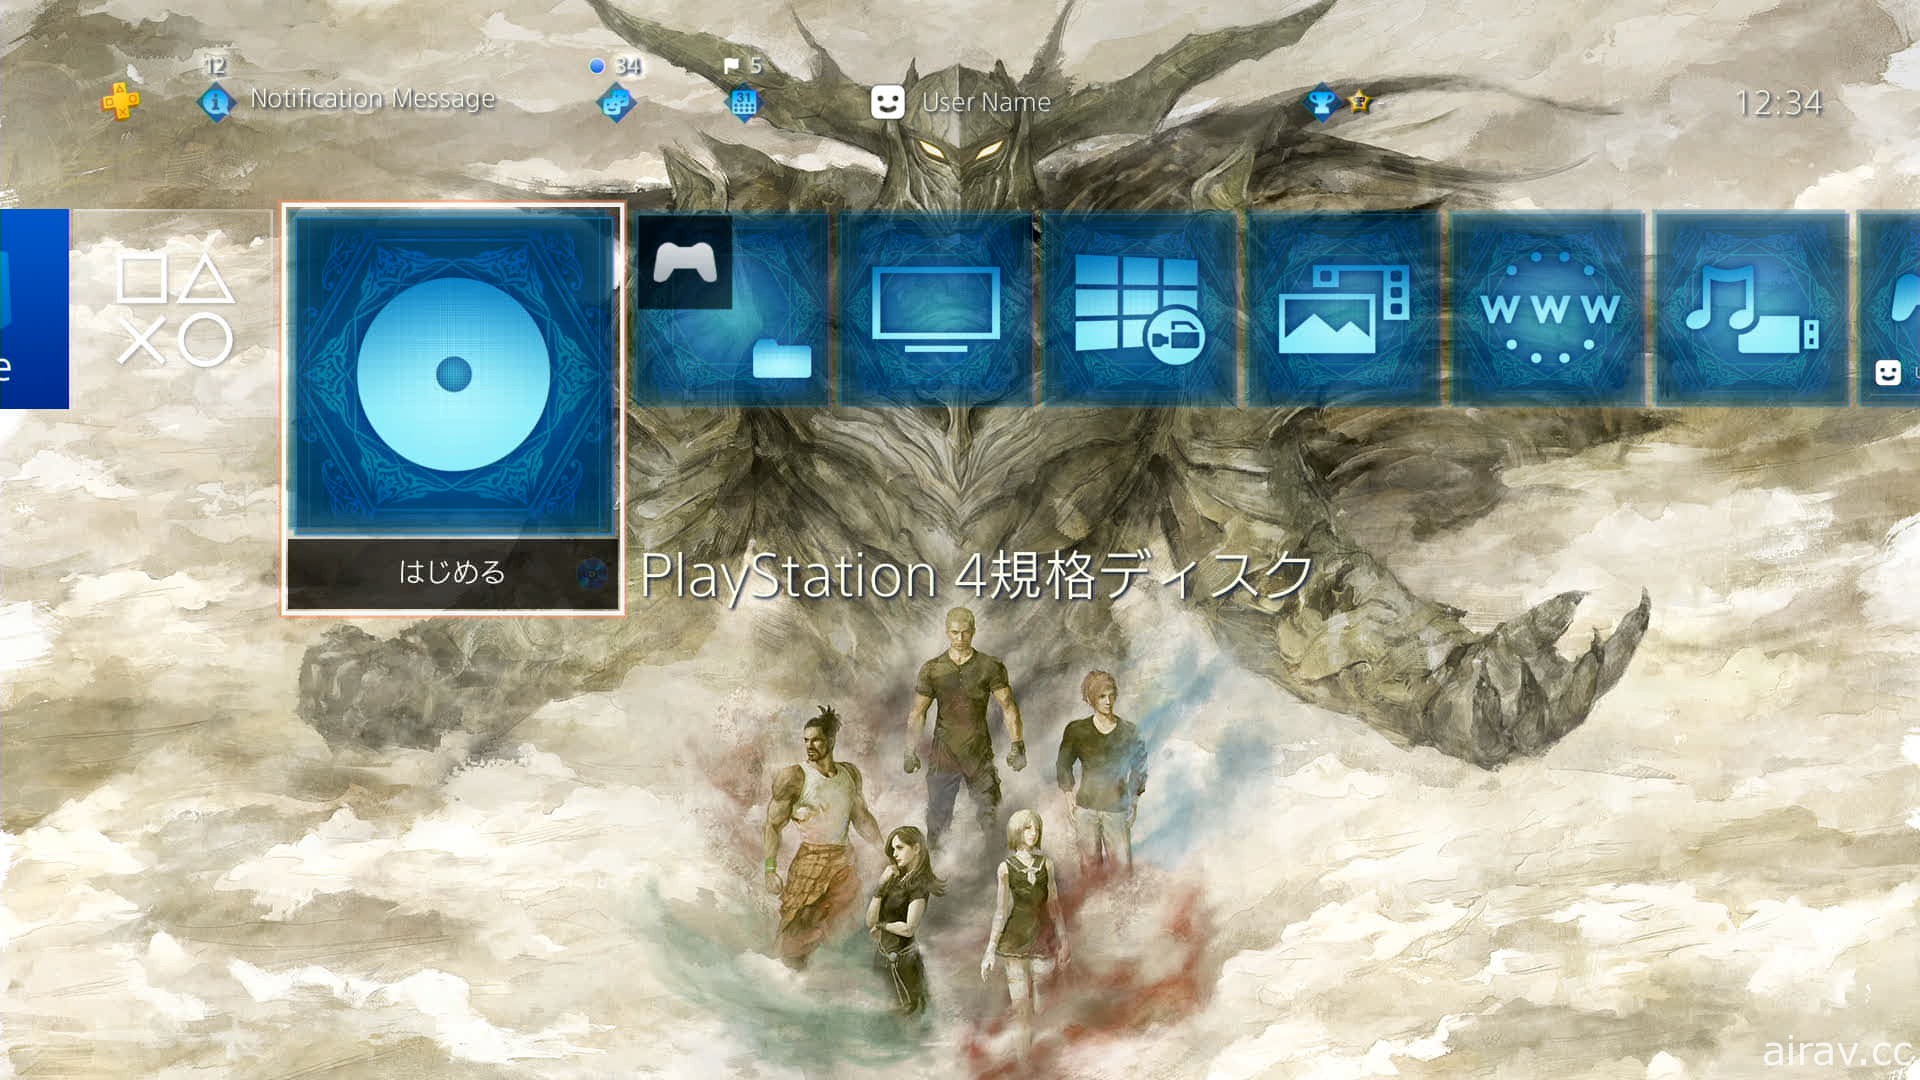 《乐园的异乡人 Final Fantasy 起源》游戏内容总回顾 介绍线上多人游玩以及主题迷宫